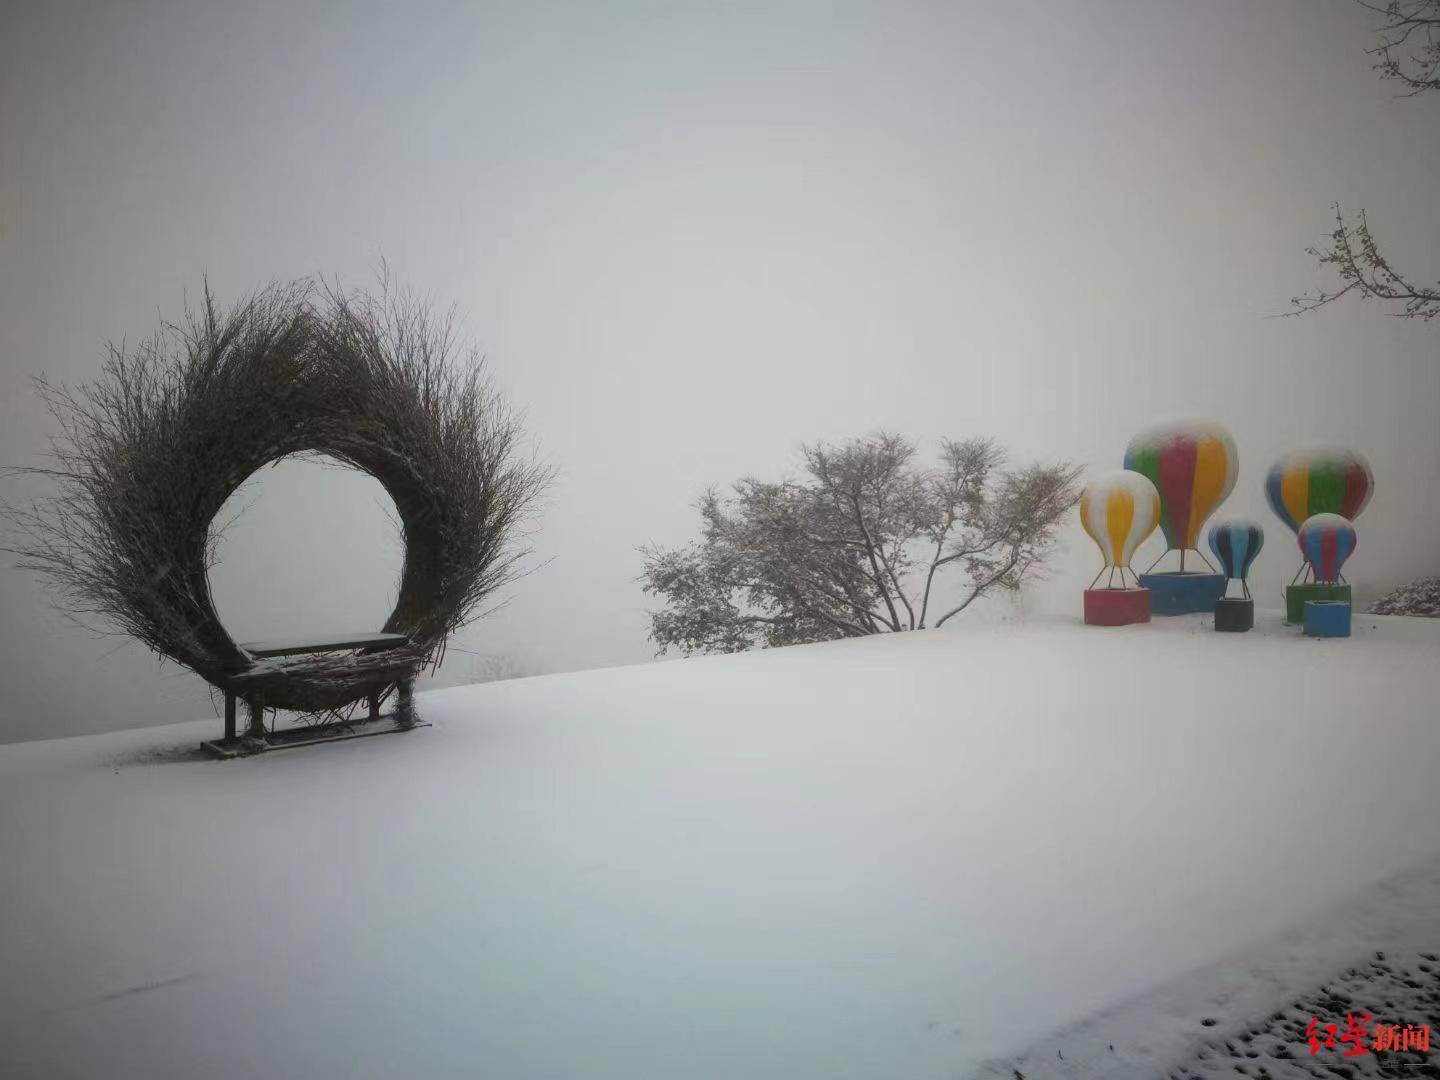 立冬！四川什邡这个地方迎来入冬第一场雪，一边赏雪一边看红叶 -6park.com